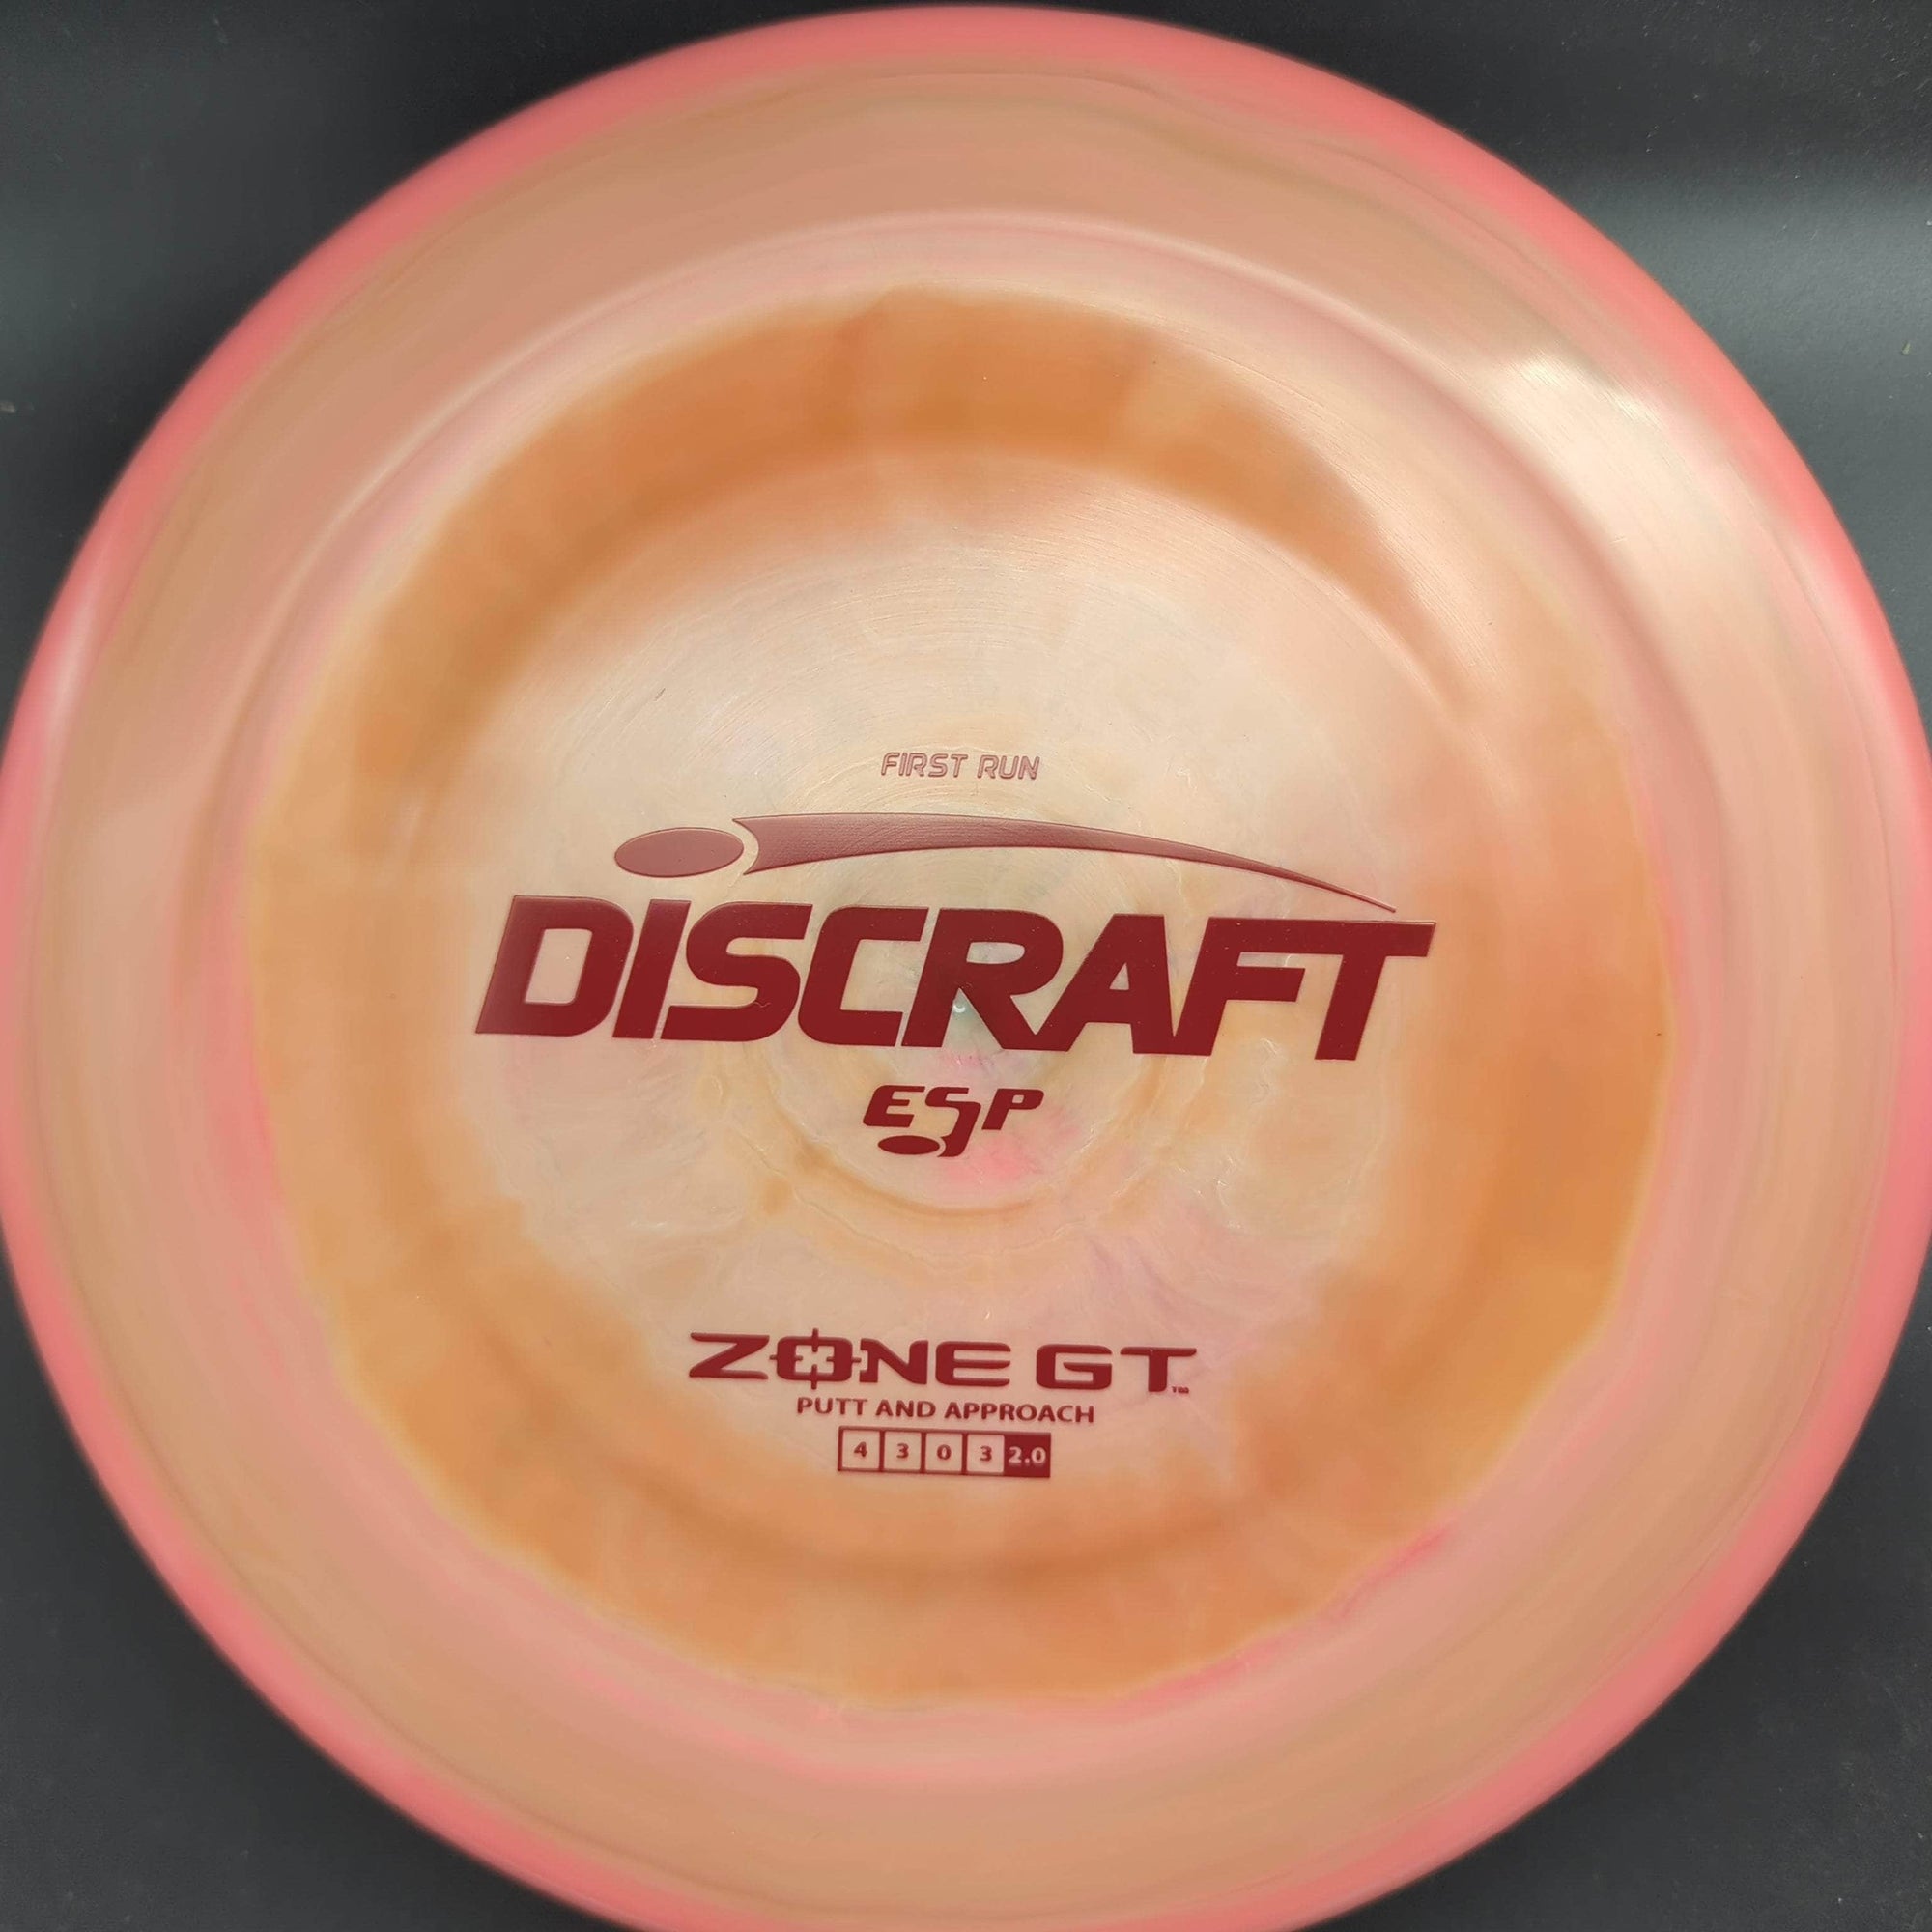 Discraft Discs Pink/Orange Red Stamp 174g Zone GT, ESP, First Run